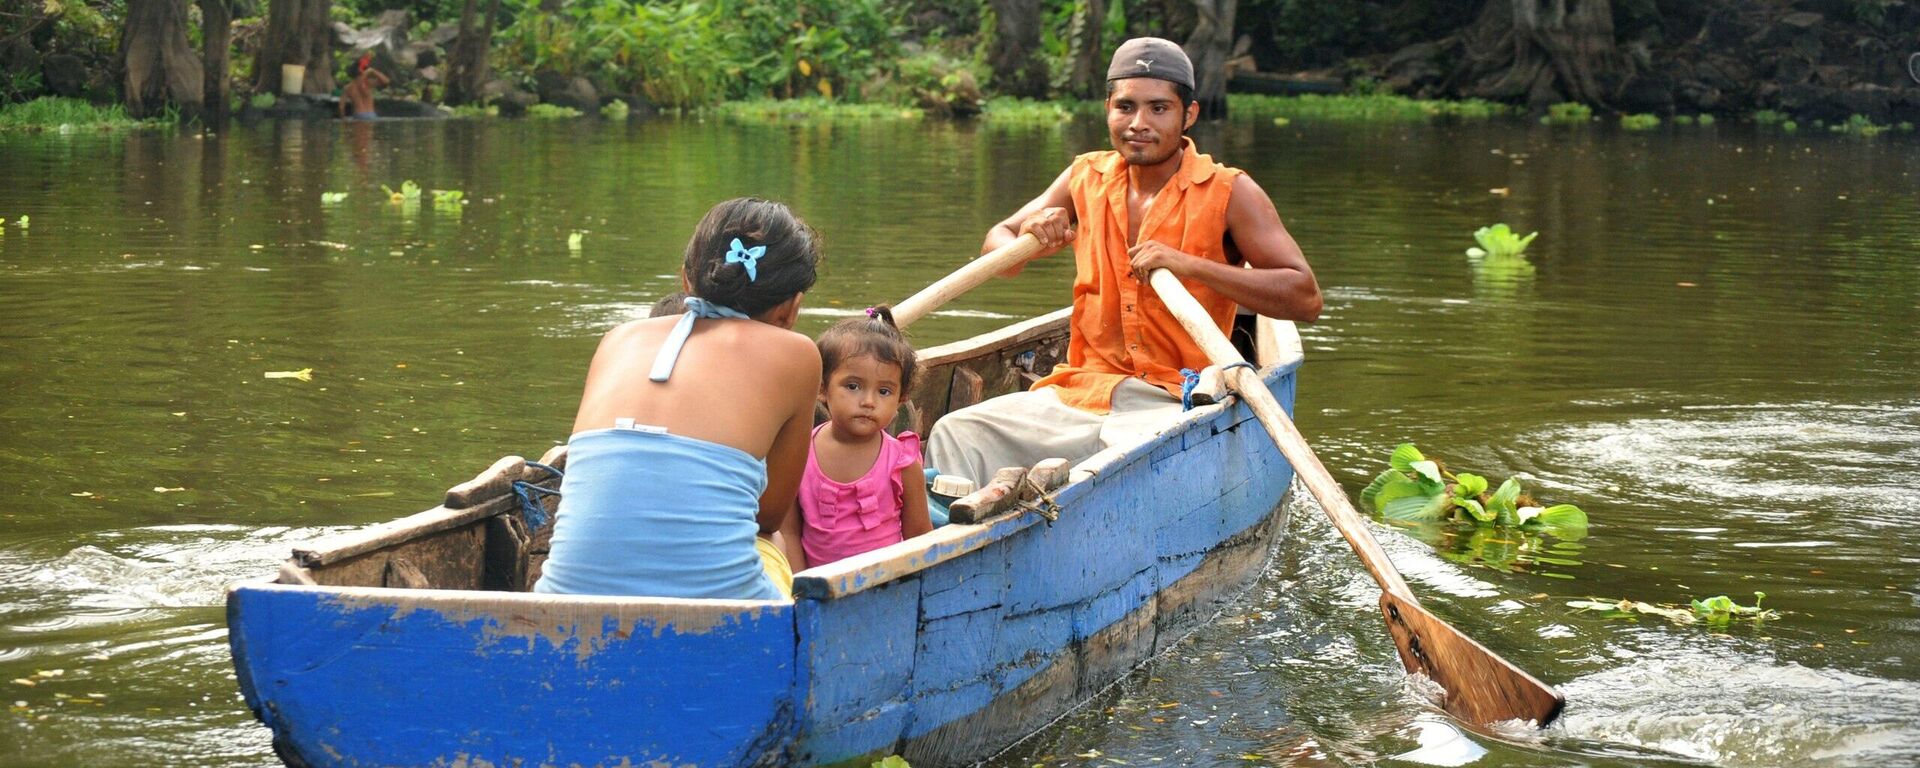 Una familia en el lago Cocibolca (Nicaragua) - Sputnik Mundo, 1920, 16.12.2021